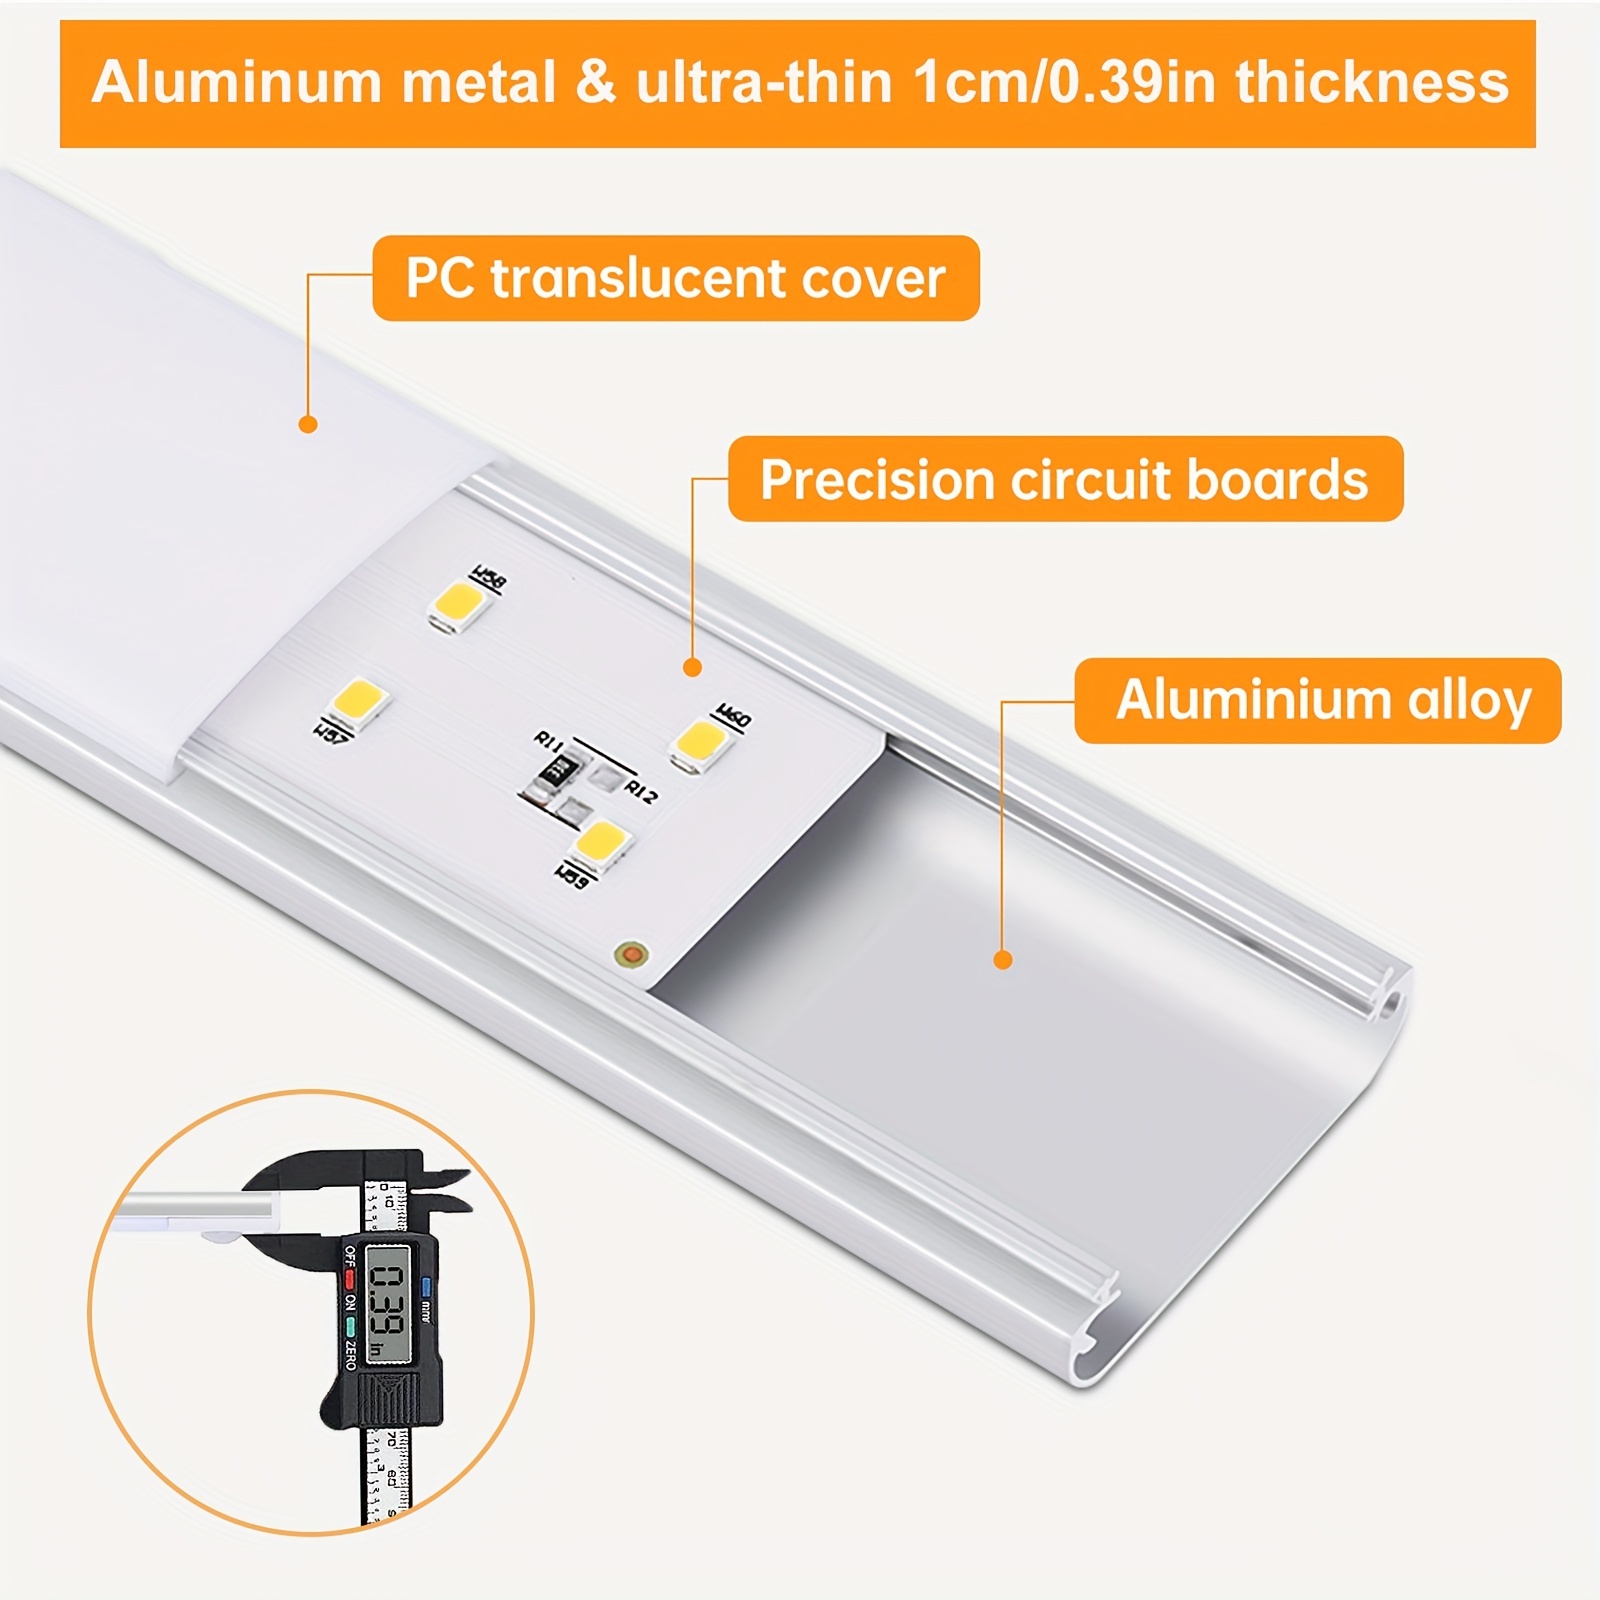 Comprar Luz LED nocturna con Sensor de movimiento para armario, iluminación  USB, lámpara para armario de cocina, luz LED magnética recargable